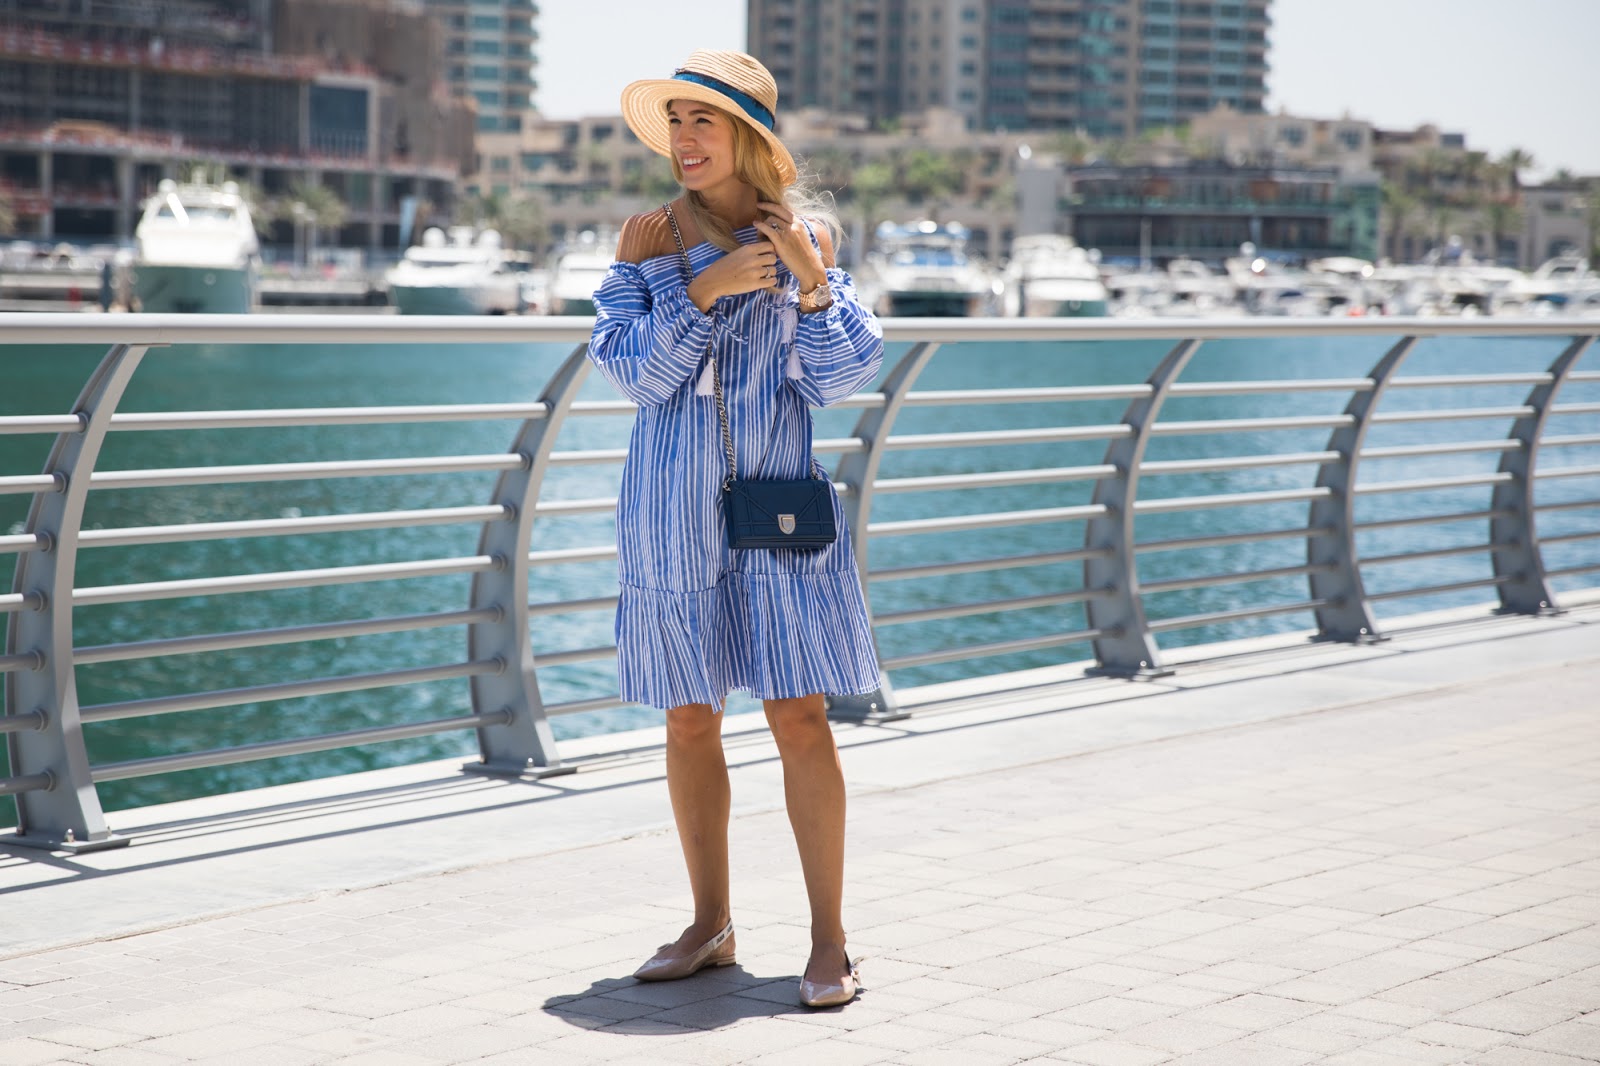 Дубай можно ли в шортах. Образы для Дубая. Дубай одежда для женщин туристов. Образы для отдыха в Дубае. Одежда для пляжа в ОАЭ.